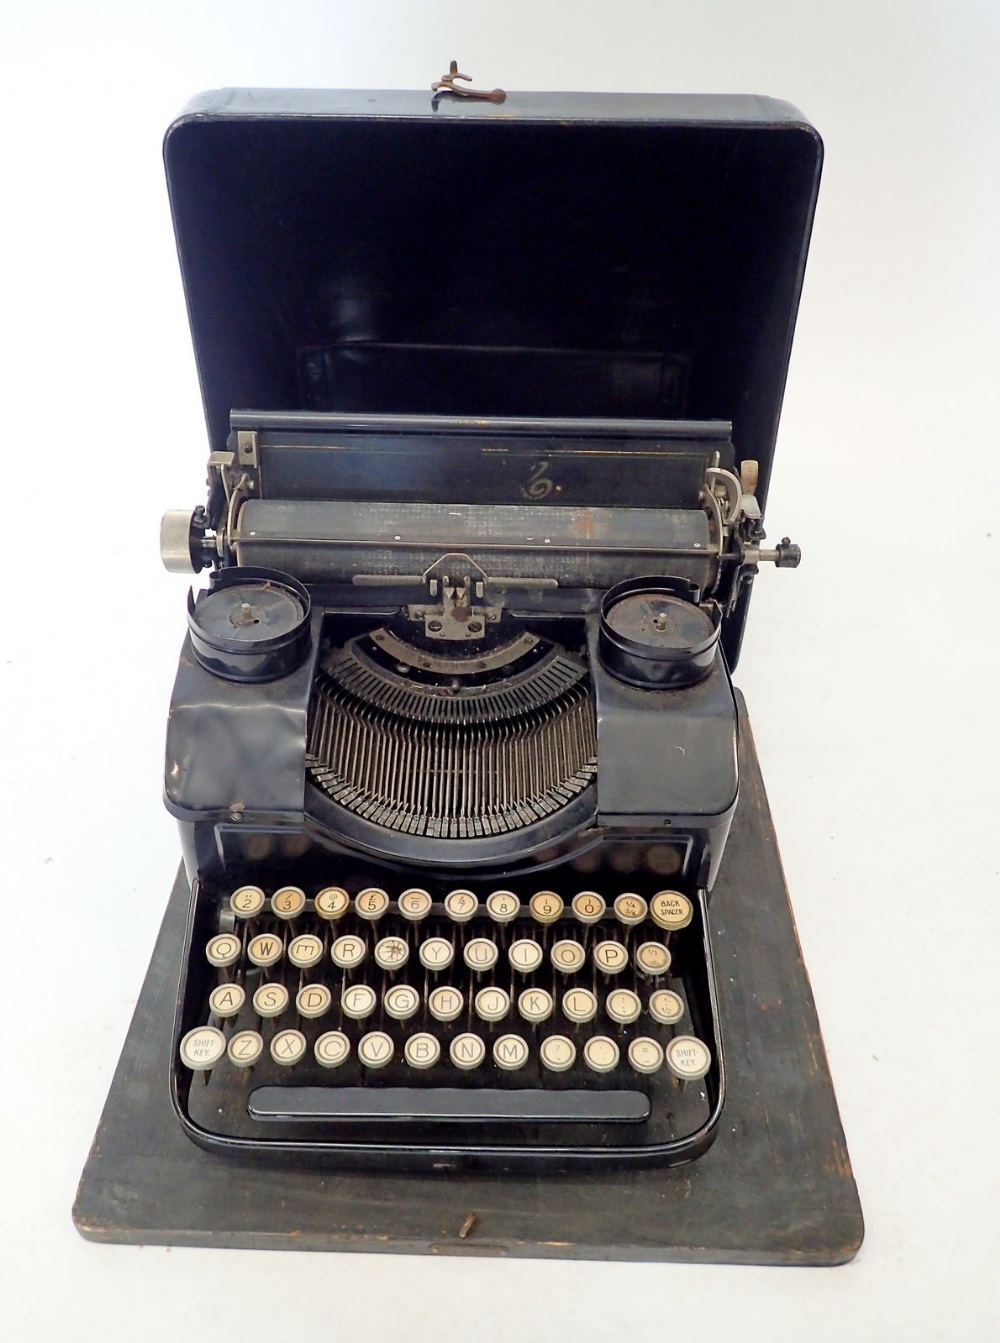 An old AMC typewriter, cased